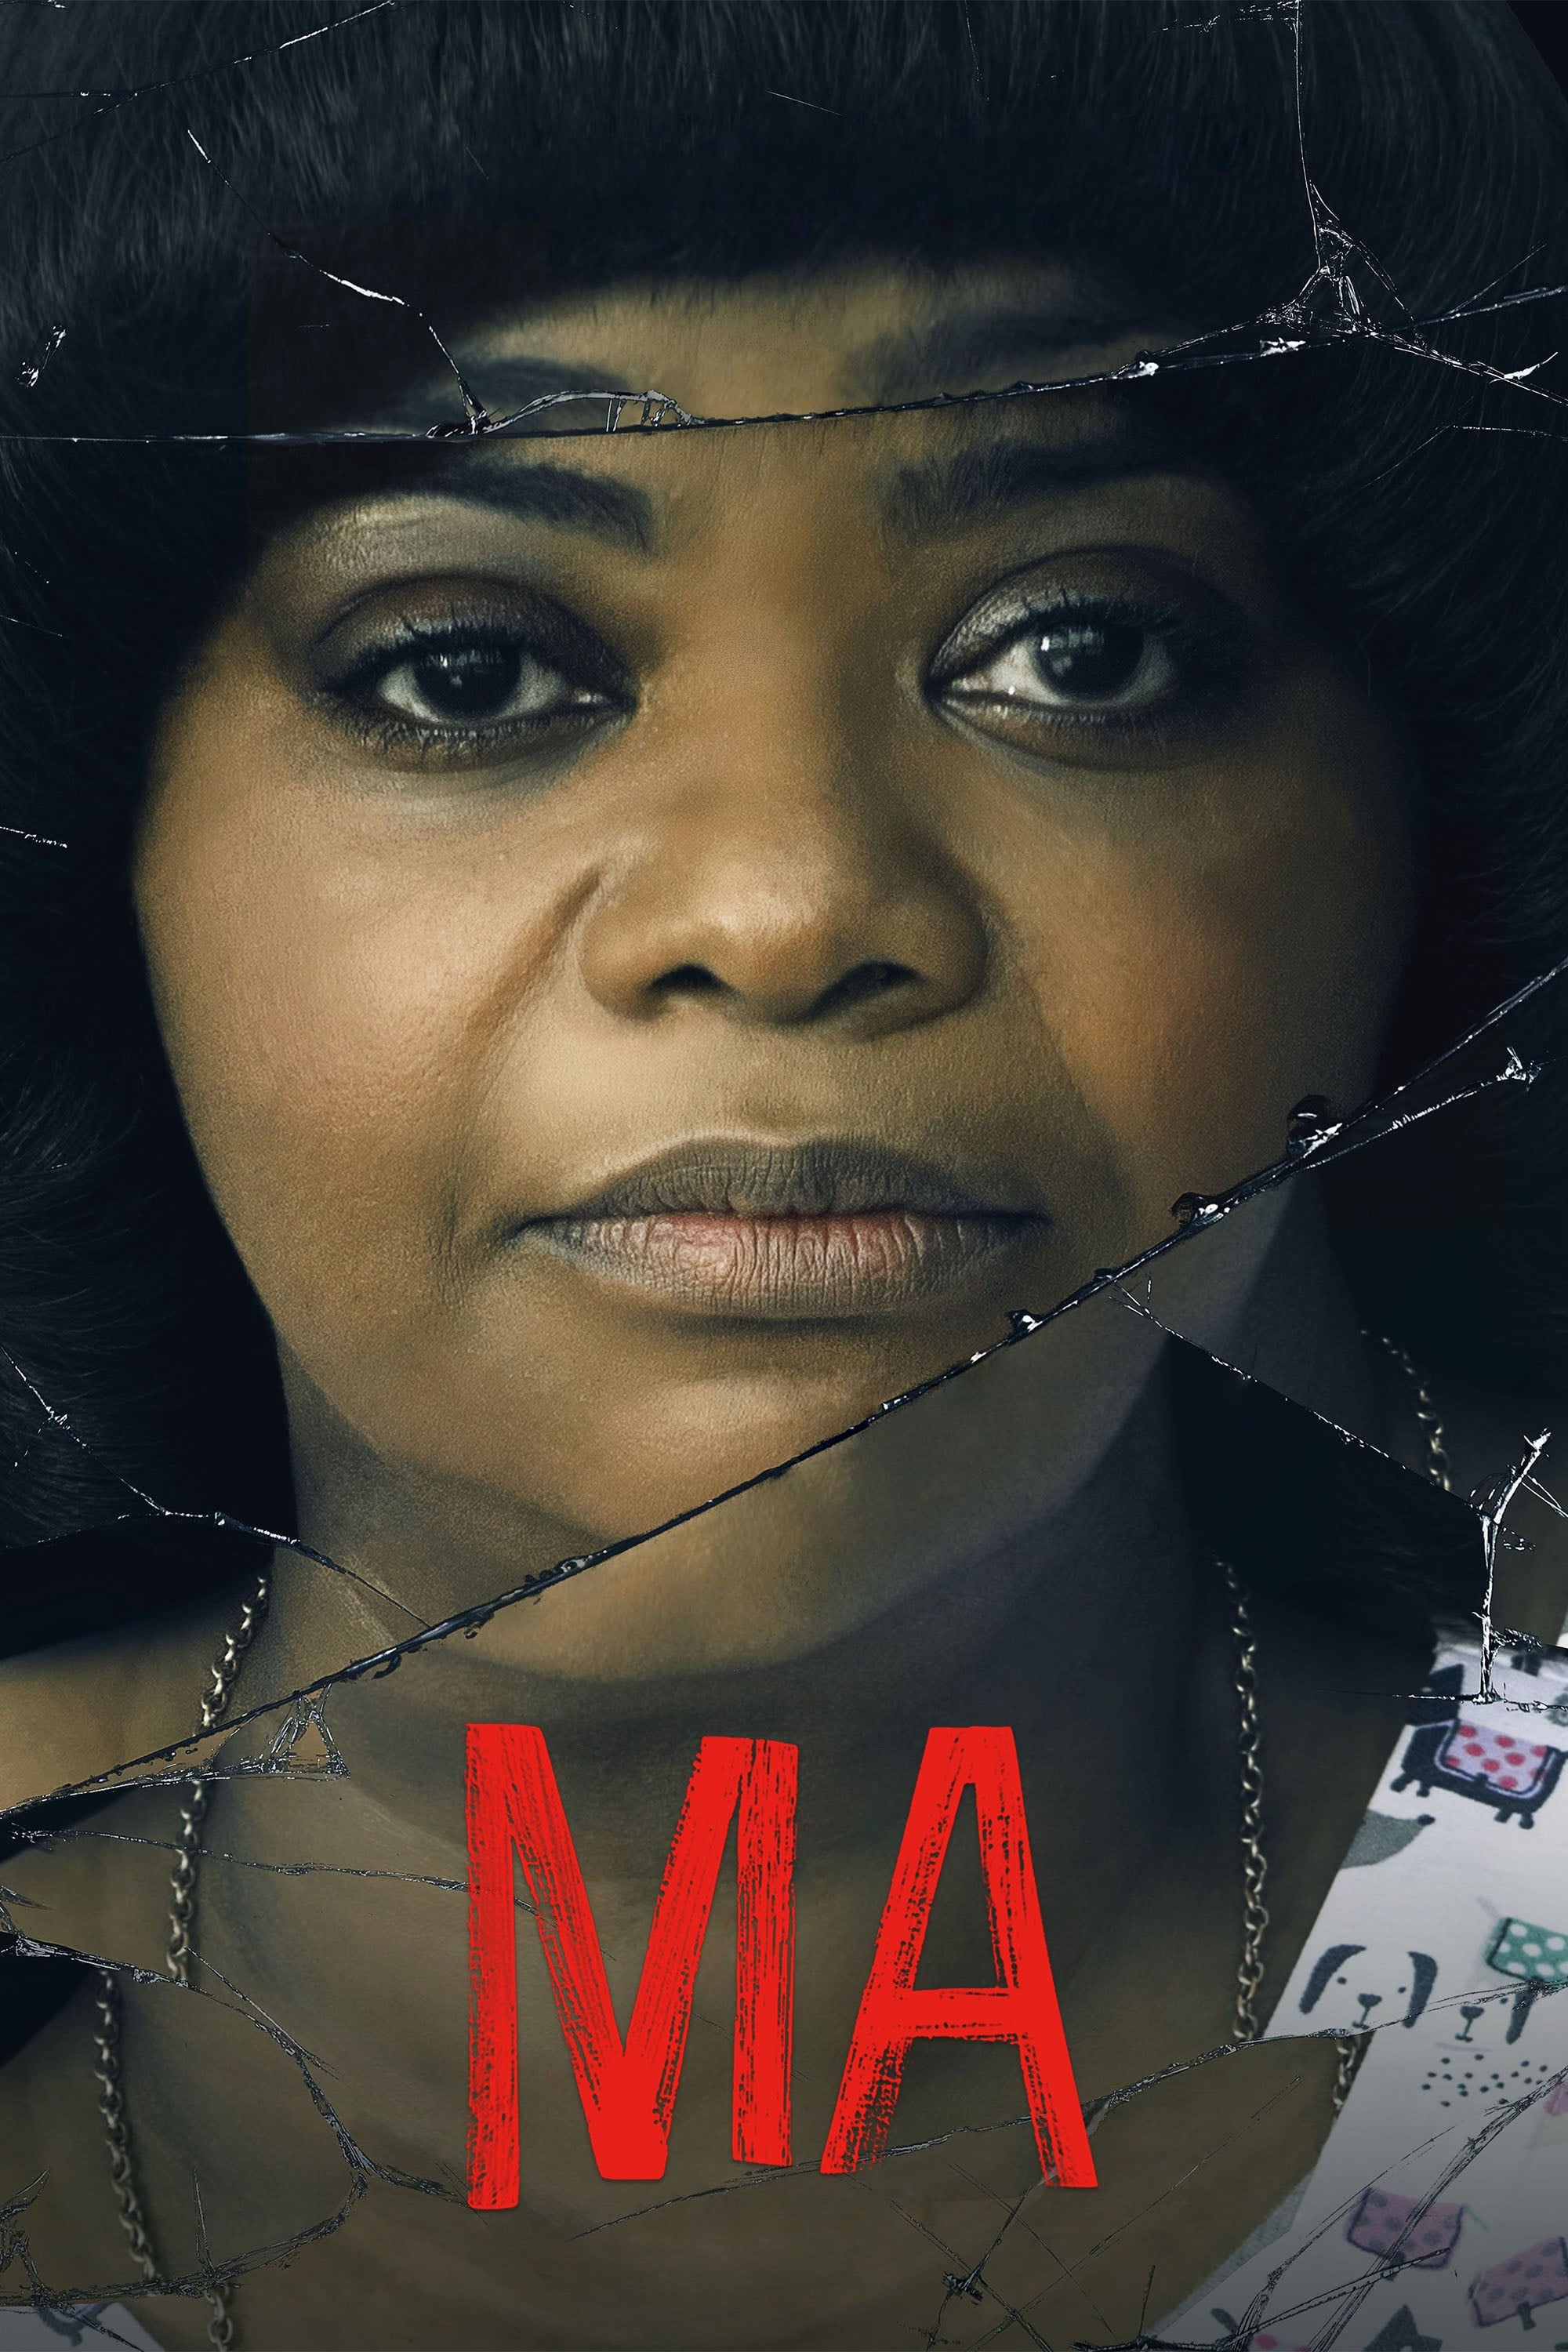 Ma (Ma) [2019]